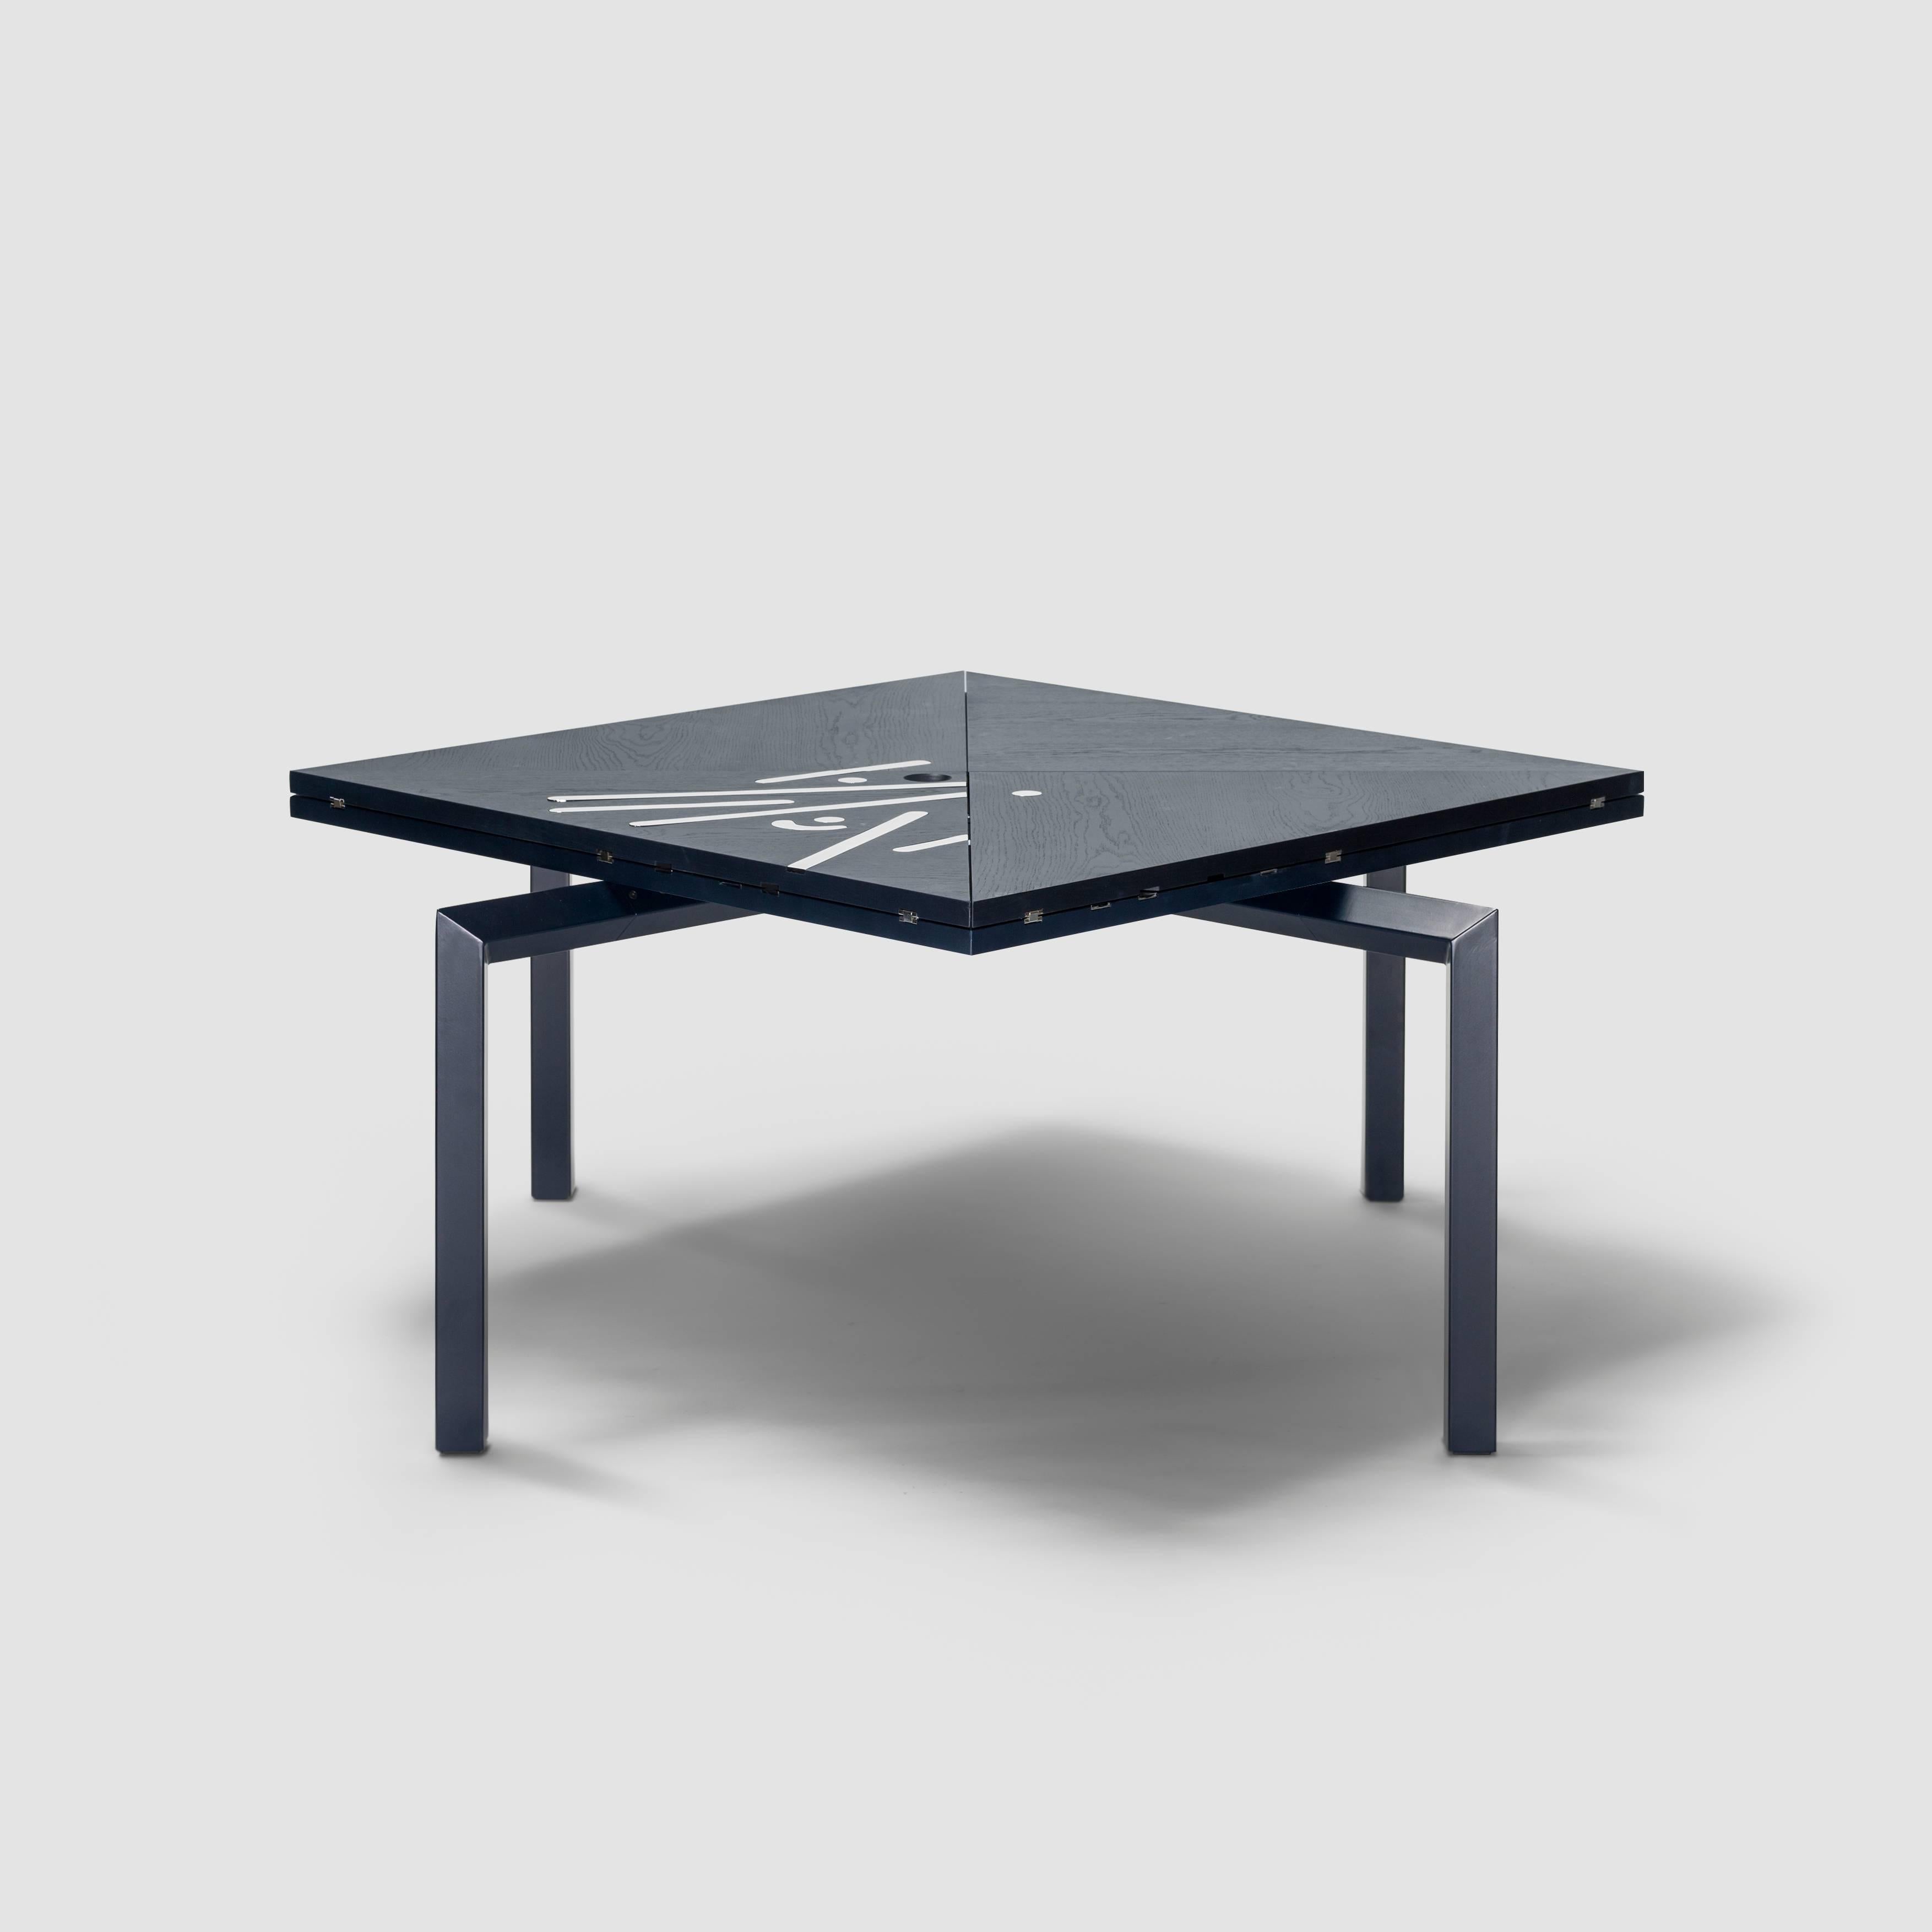 Alella-Tisch entworfen von Llus Clotet.

Die limitierte Auflage beträgt 8 Stück + 2 Künstlerabzüge + 2 Prototypen.
DM, Eiche furniert und dunkelblau lackiert, RAL 5004.
Beine aus einem rechteckigen Eisenrohr, das in der gleichen Farbe wie die